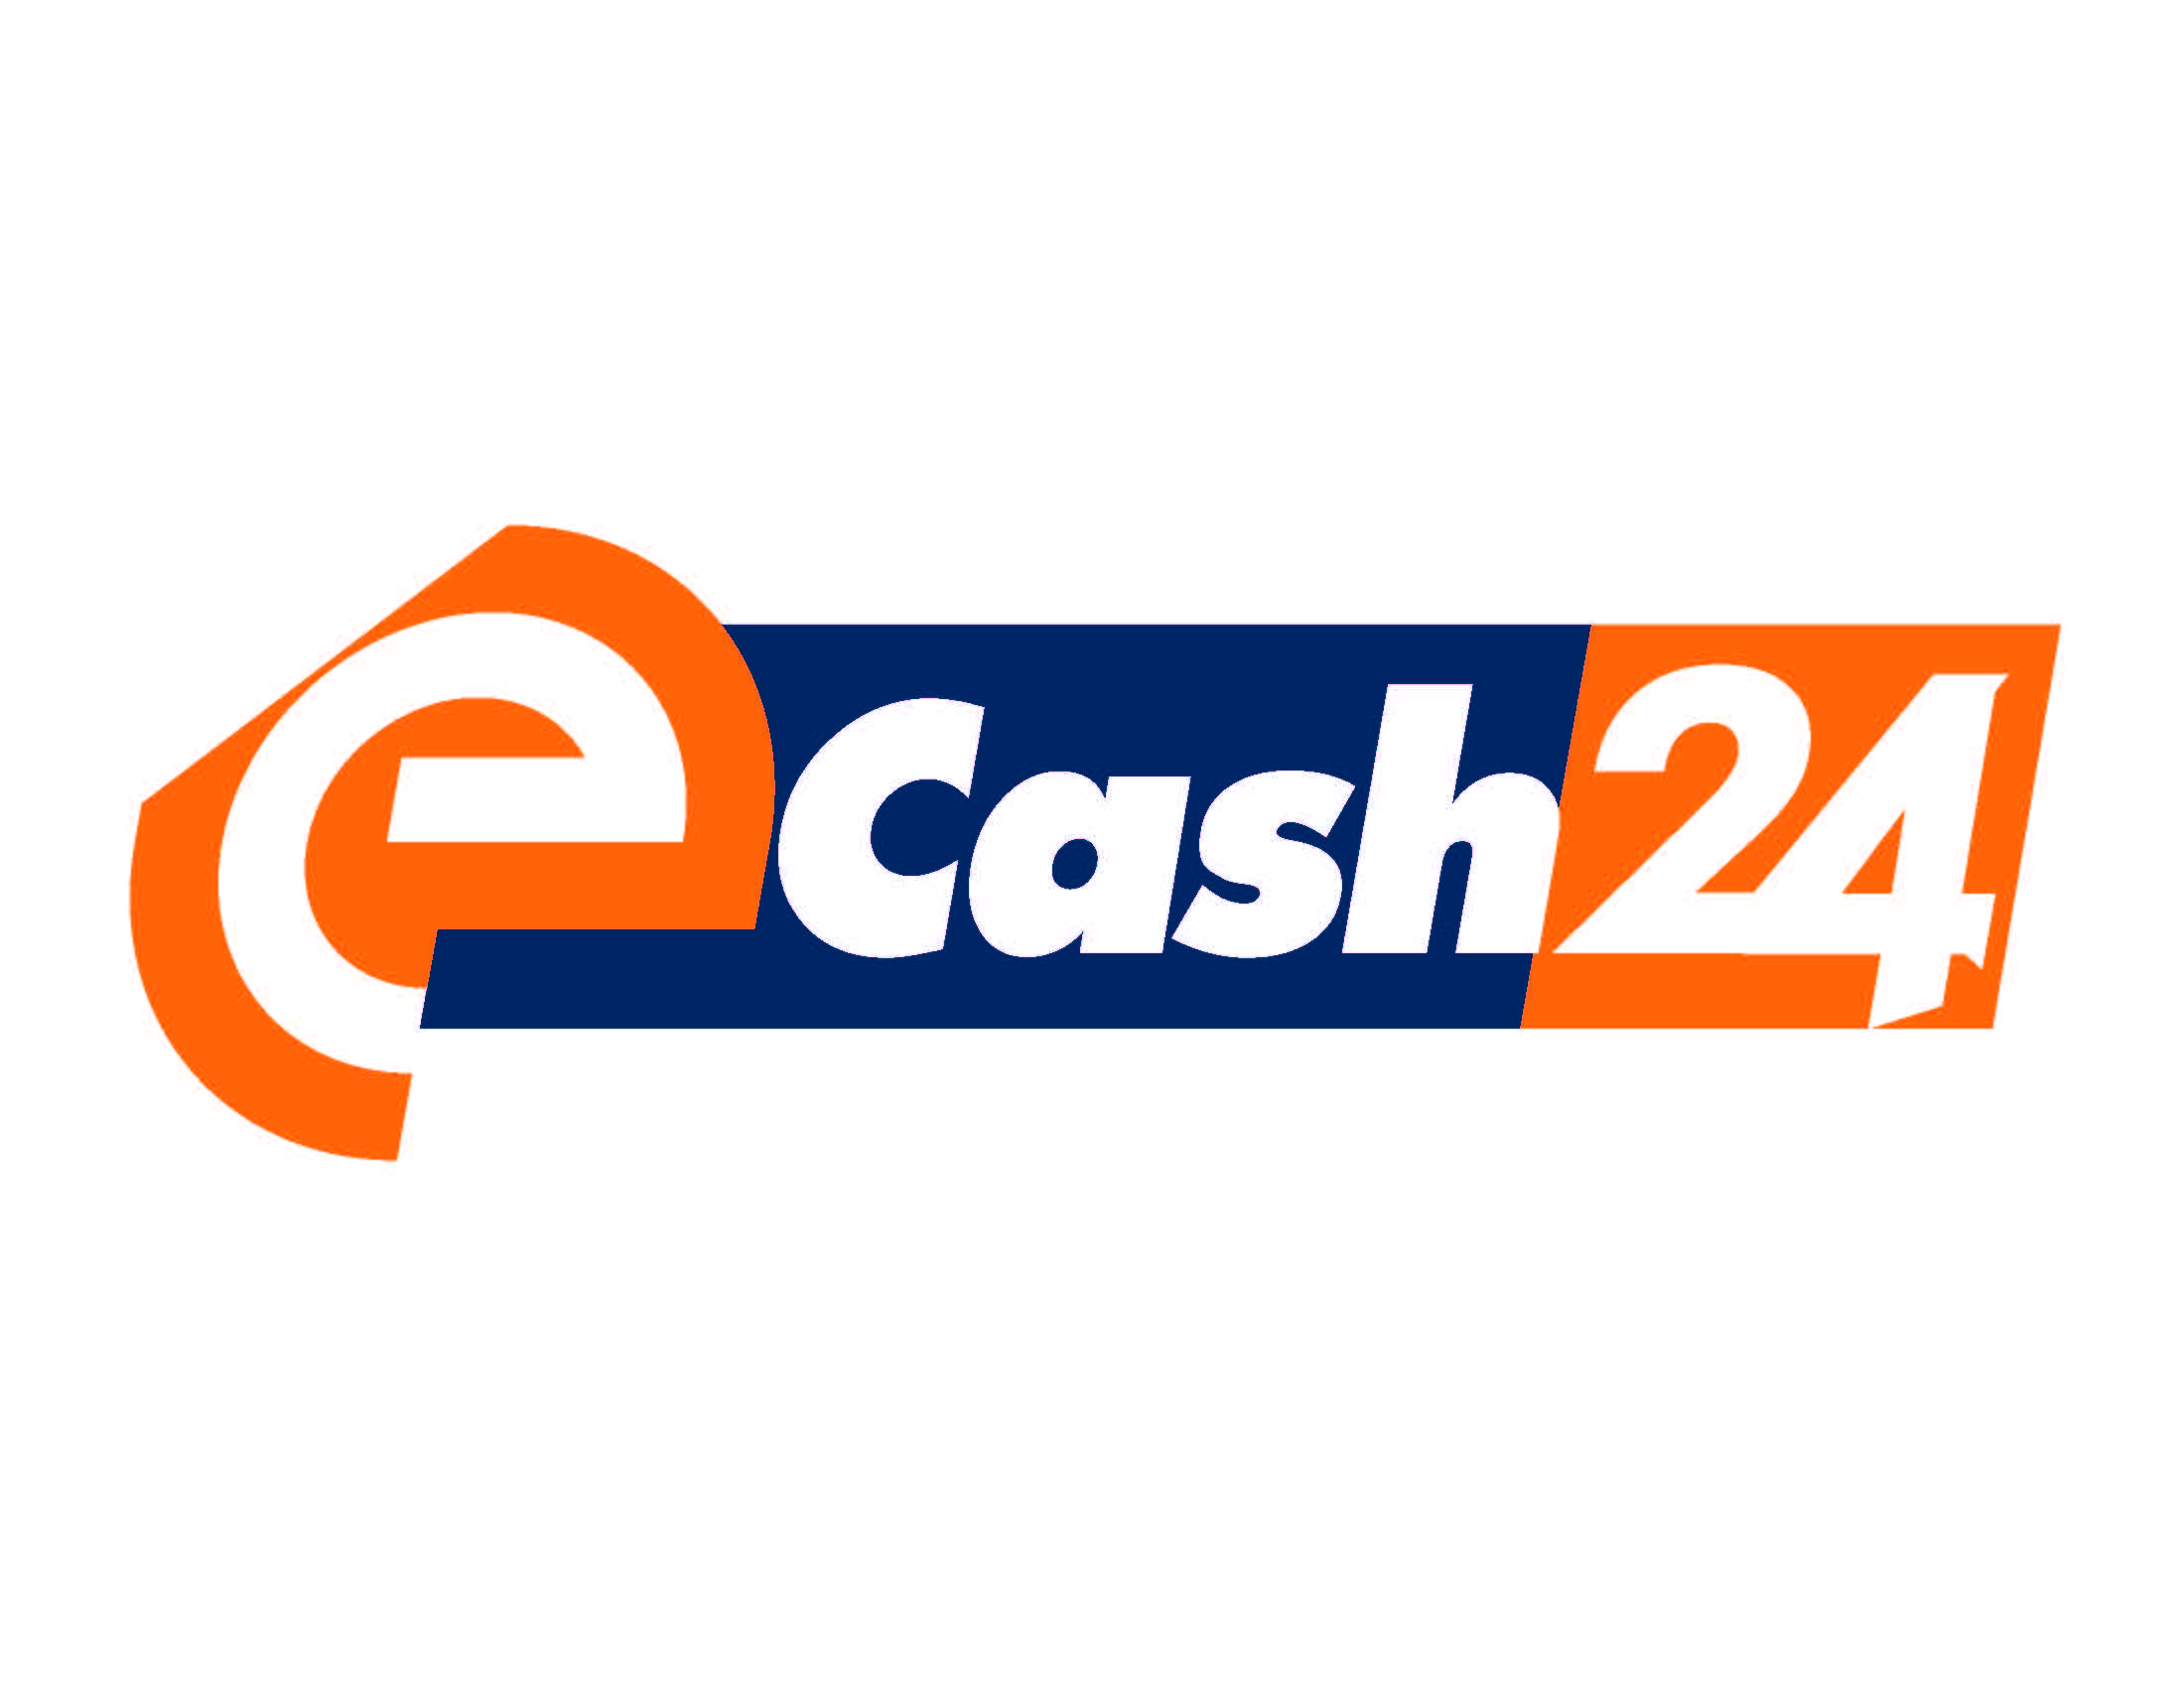 E-Cash 24